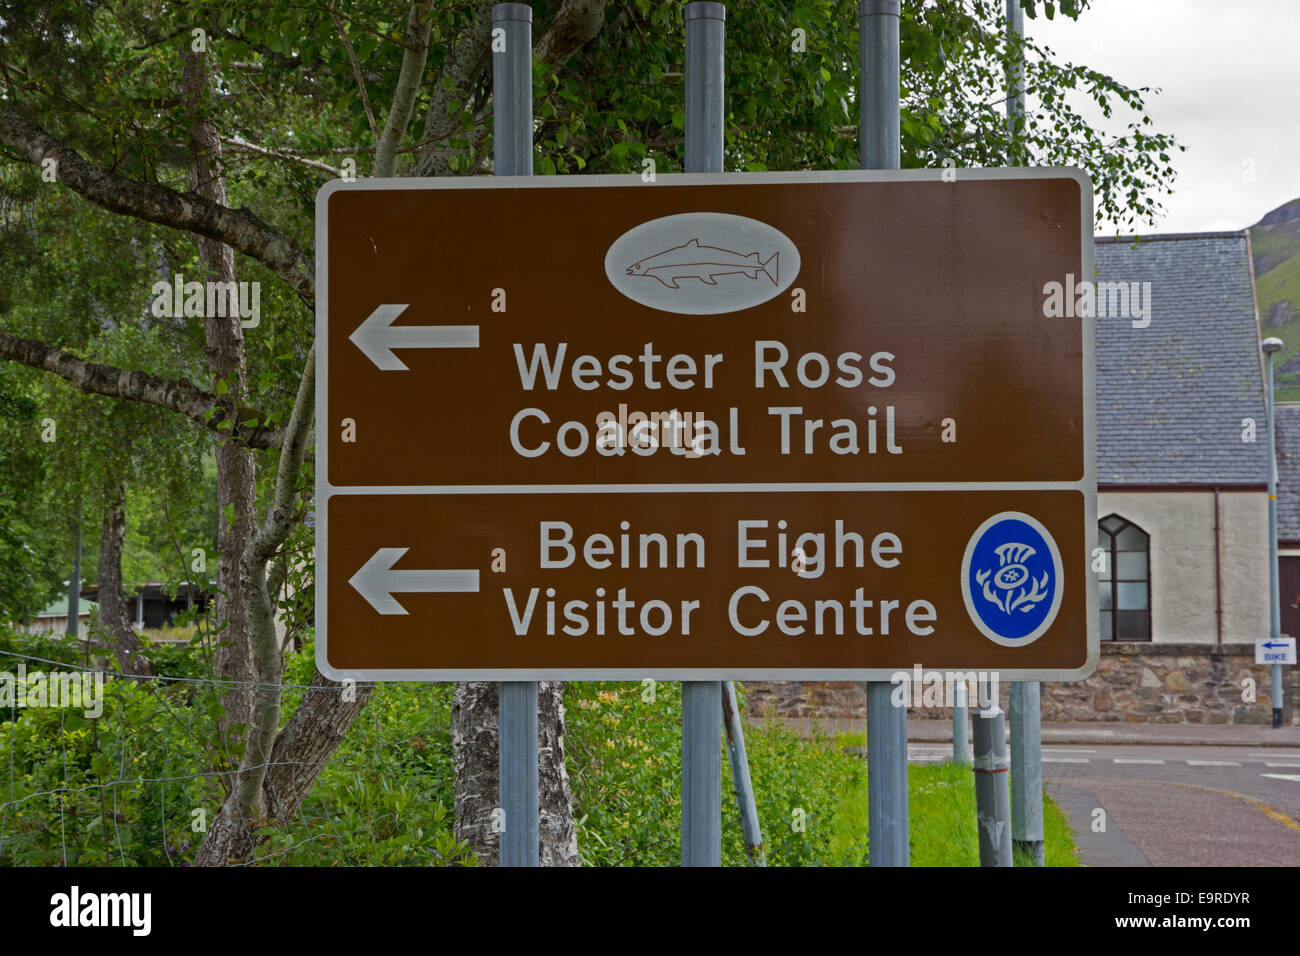 Strada turistica segno indicante la direzione di Wester Ross il sentiero costiero e Beinn Eighe Visitor Center, Kinlochewe, Scozia Foto Stock